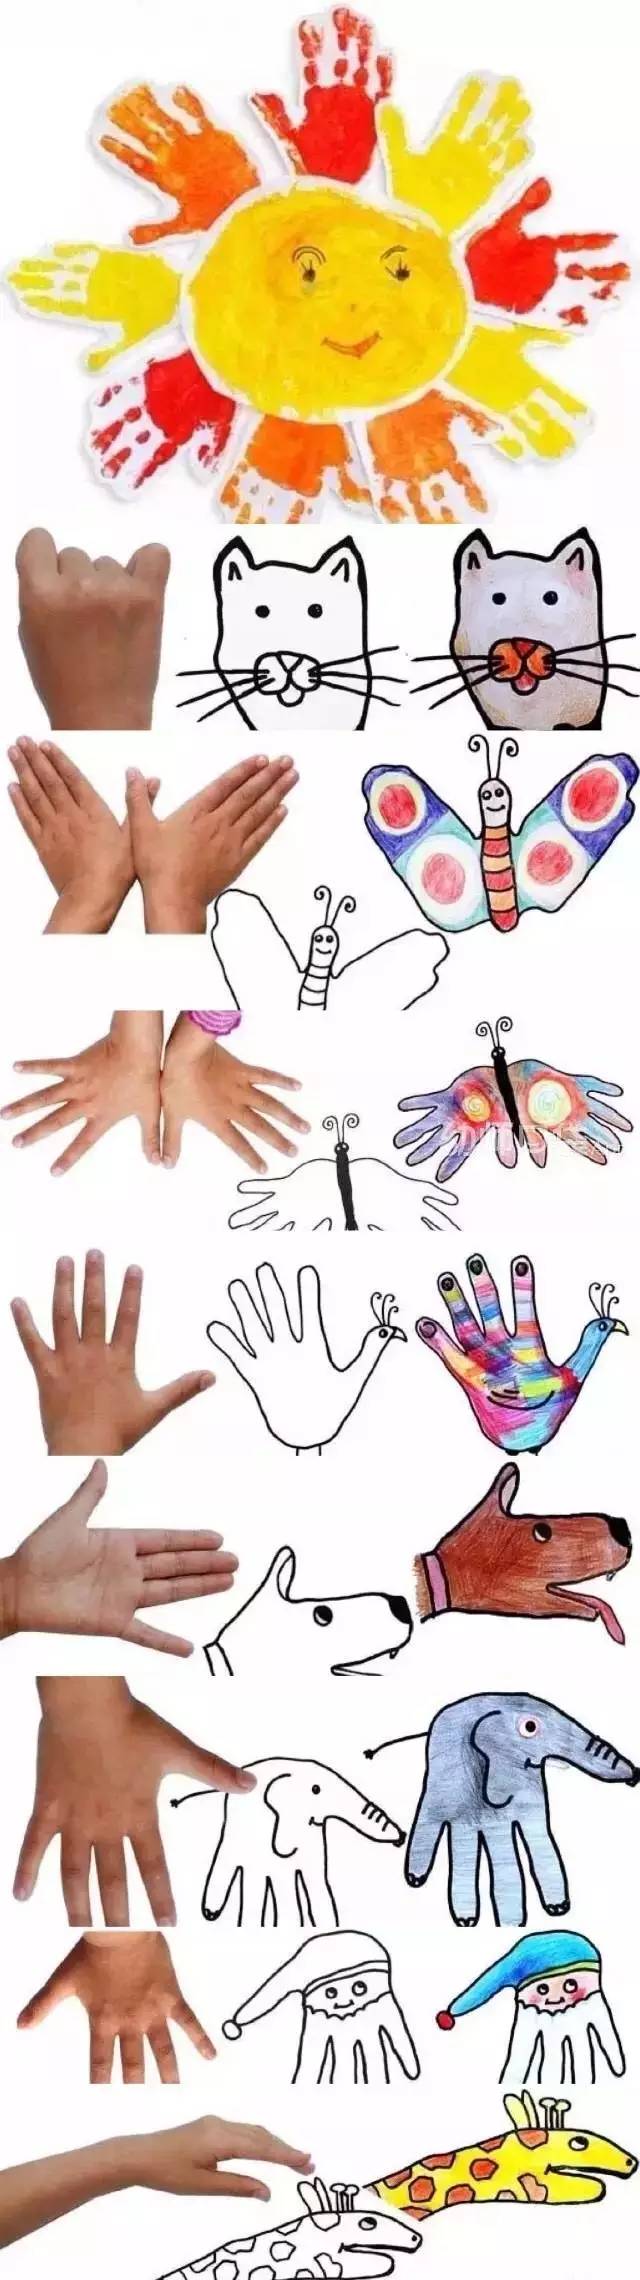 教你轻松学会9种手指画玩法!